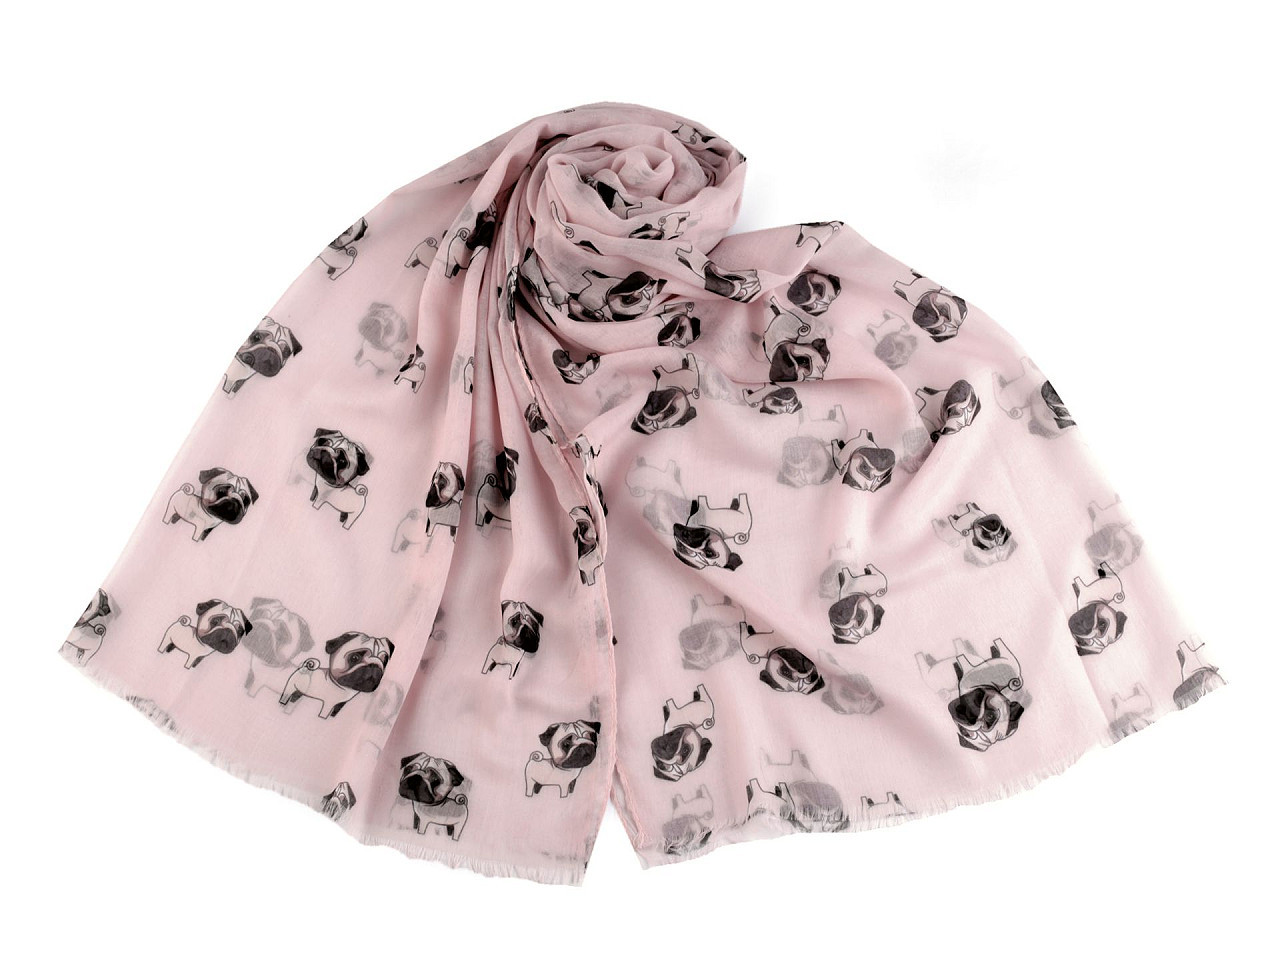 Letní šátek / šála jezevčík, buldoček 75x180 cm, barva 3 růžová nejsv.